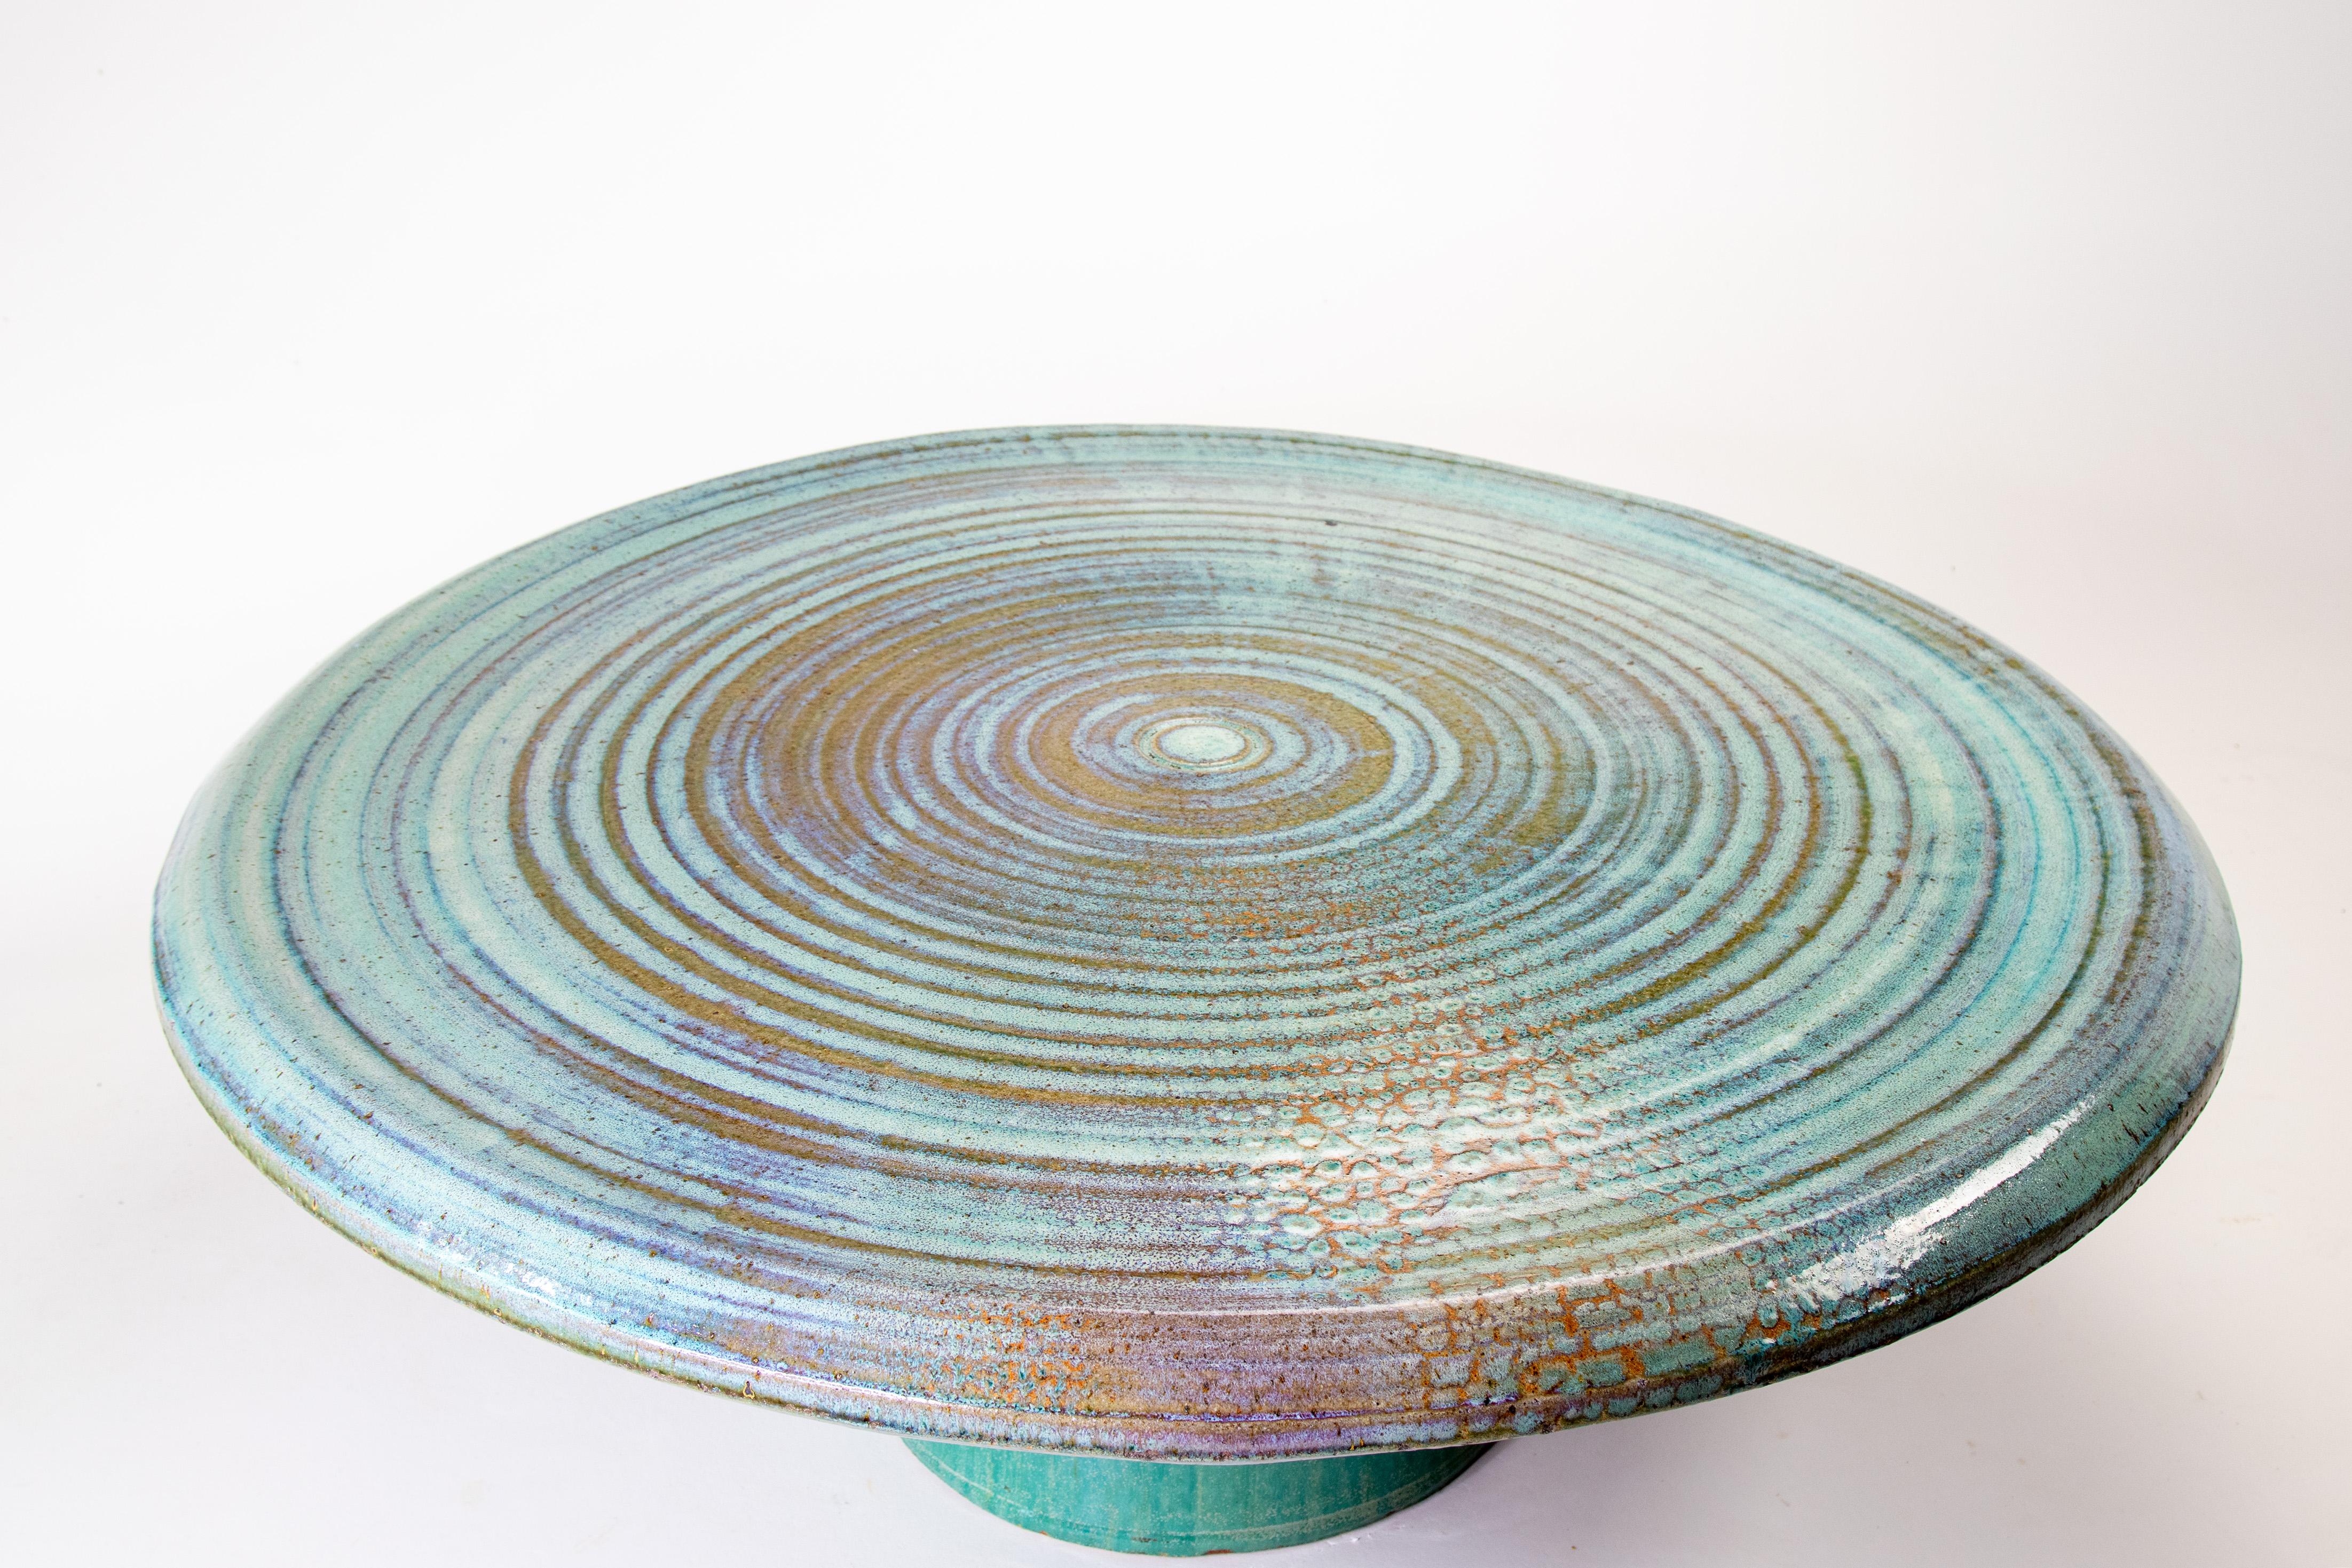 Ein monumentaler Couchtisch aus Keramik von Joel Cottet, einem Keramiker aus Portland Oregan. Joel Cottet experimentierte in den 70er Jahren mit dem Brennen großformatiger Keramik und war einer der ersten, dem es gelang, Stücke in Möbelgröße aus